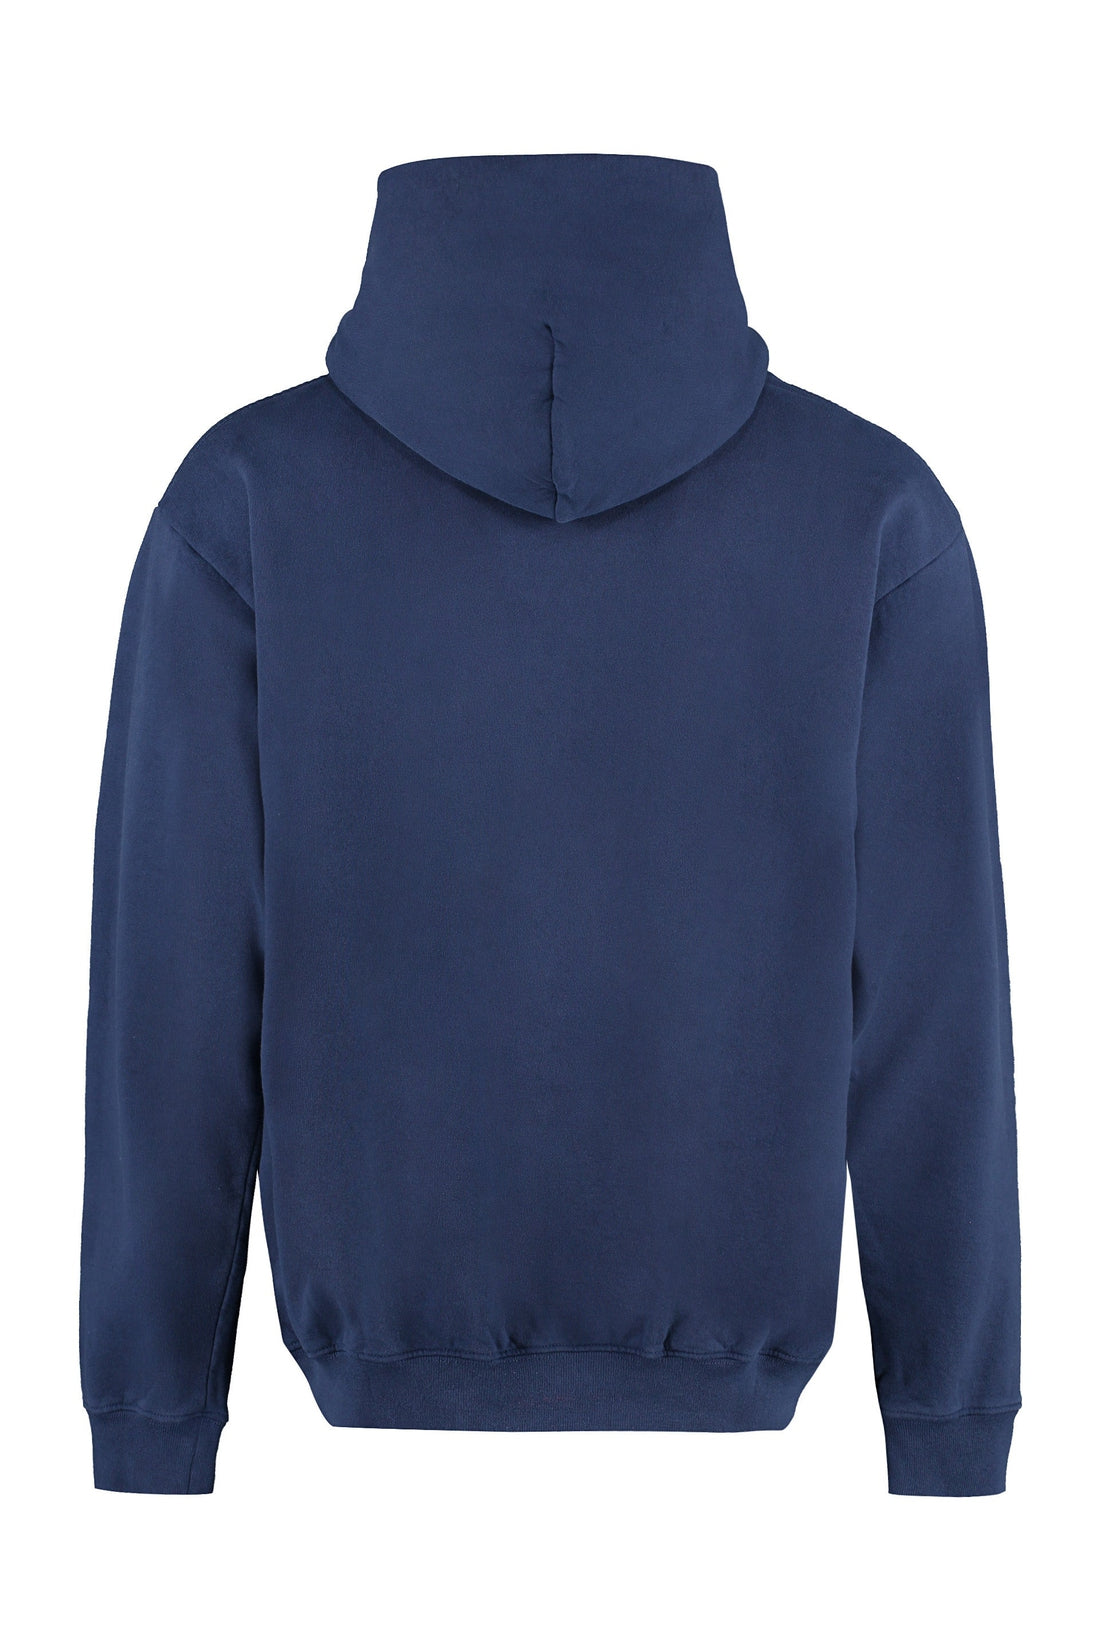 Sporty & Rich-OUTLET-SALE-Cotton hoodie-ARCHIVIST